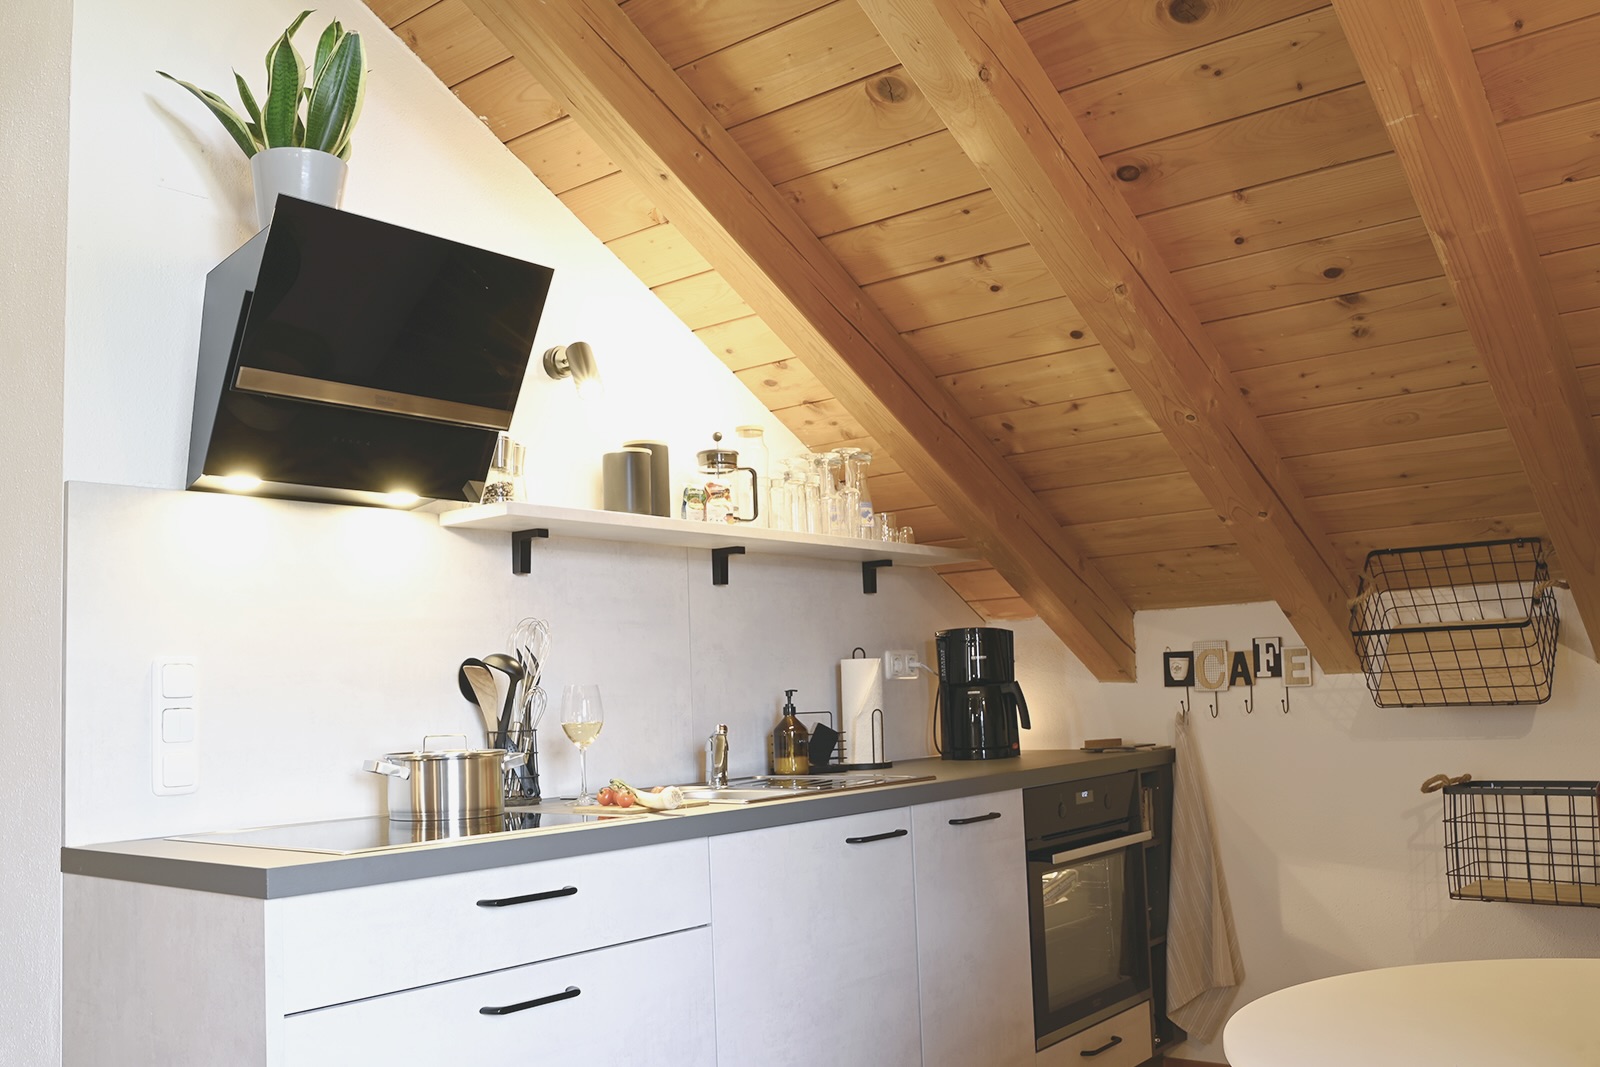 Neue und top ausgestattete Küchenzeile mit cleanem Look in Betonoptik